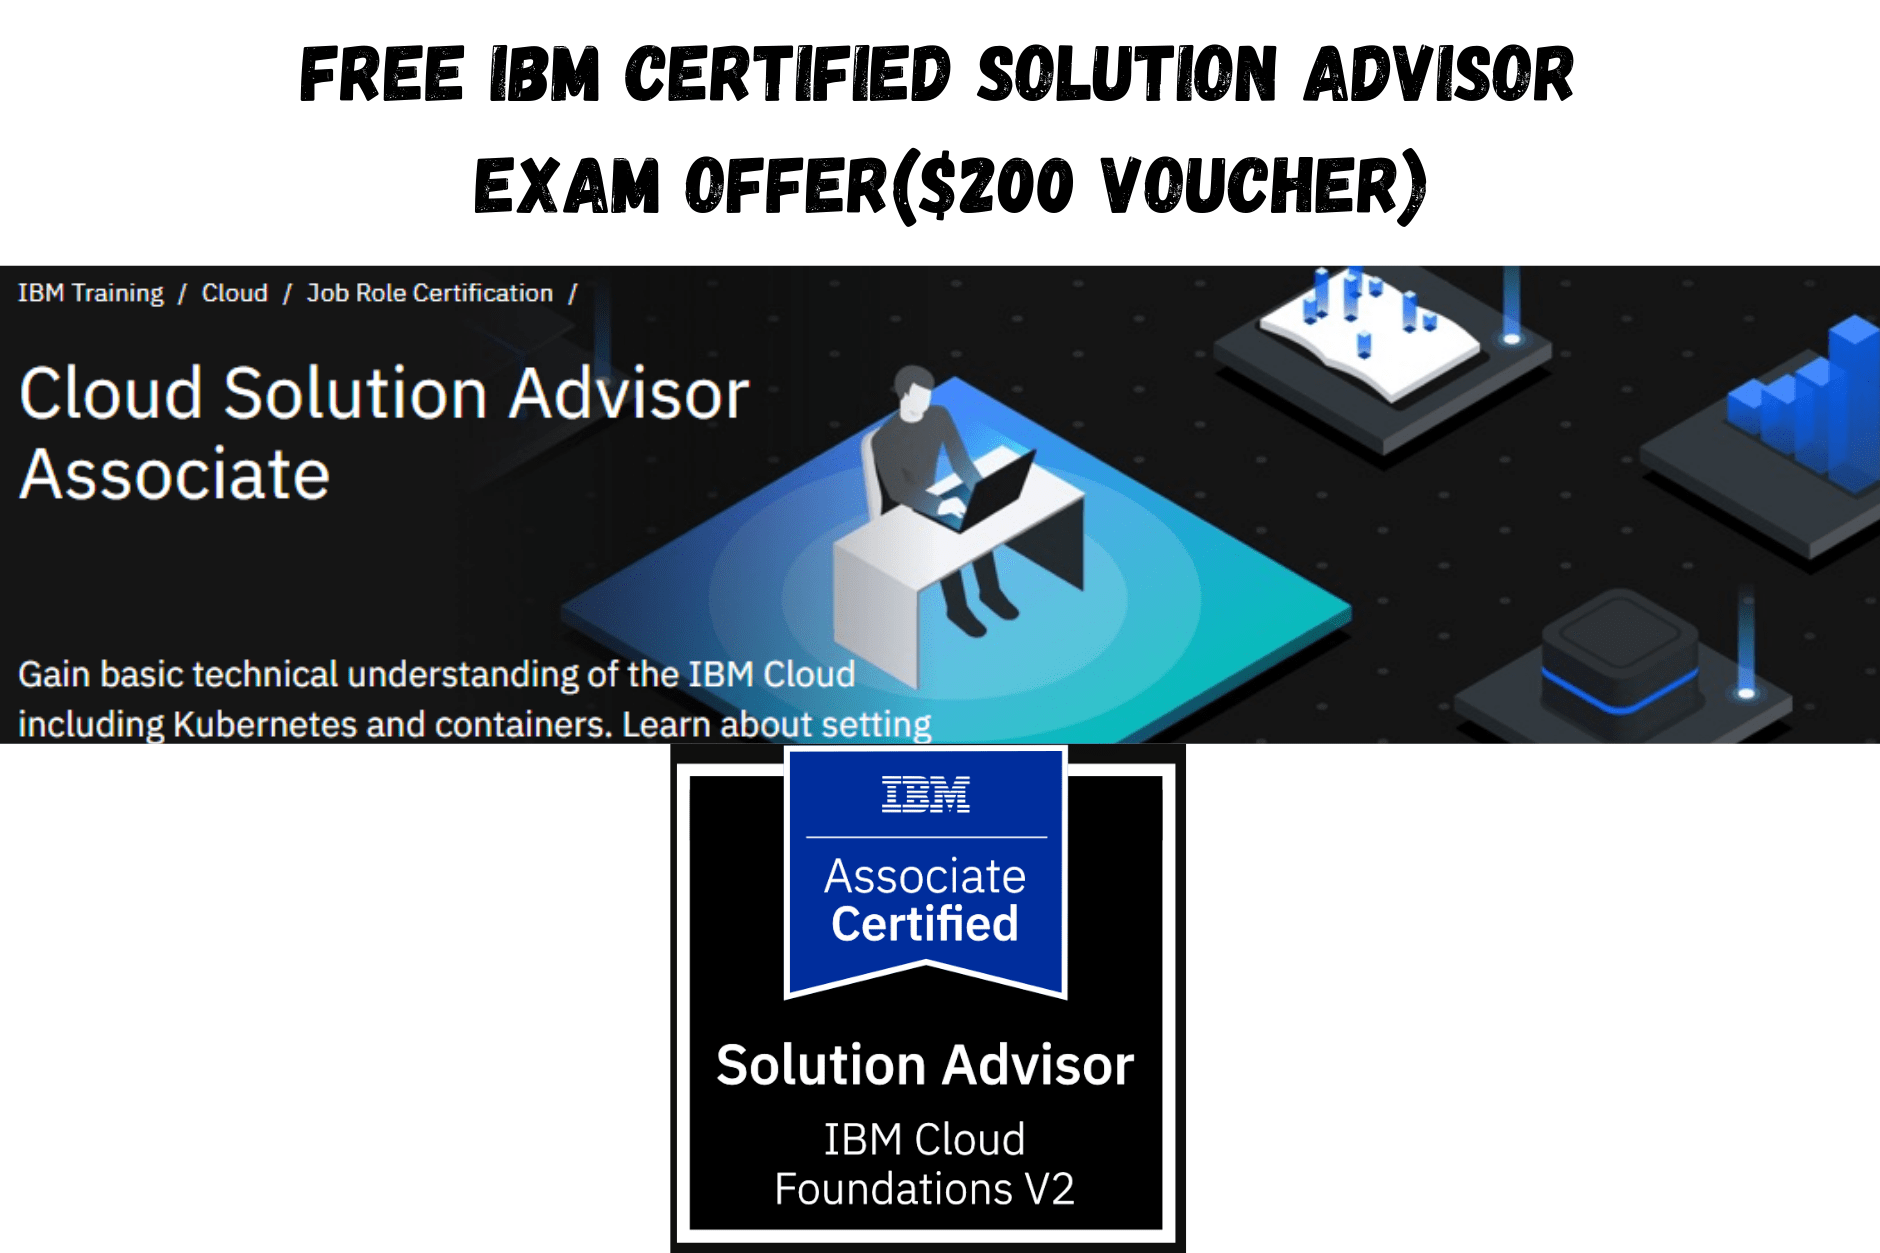 Free IBM Certified Solution Advisor Exam Offer